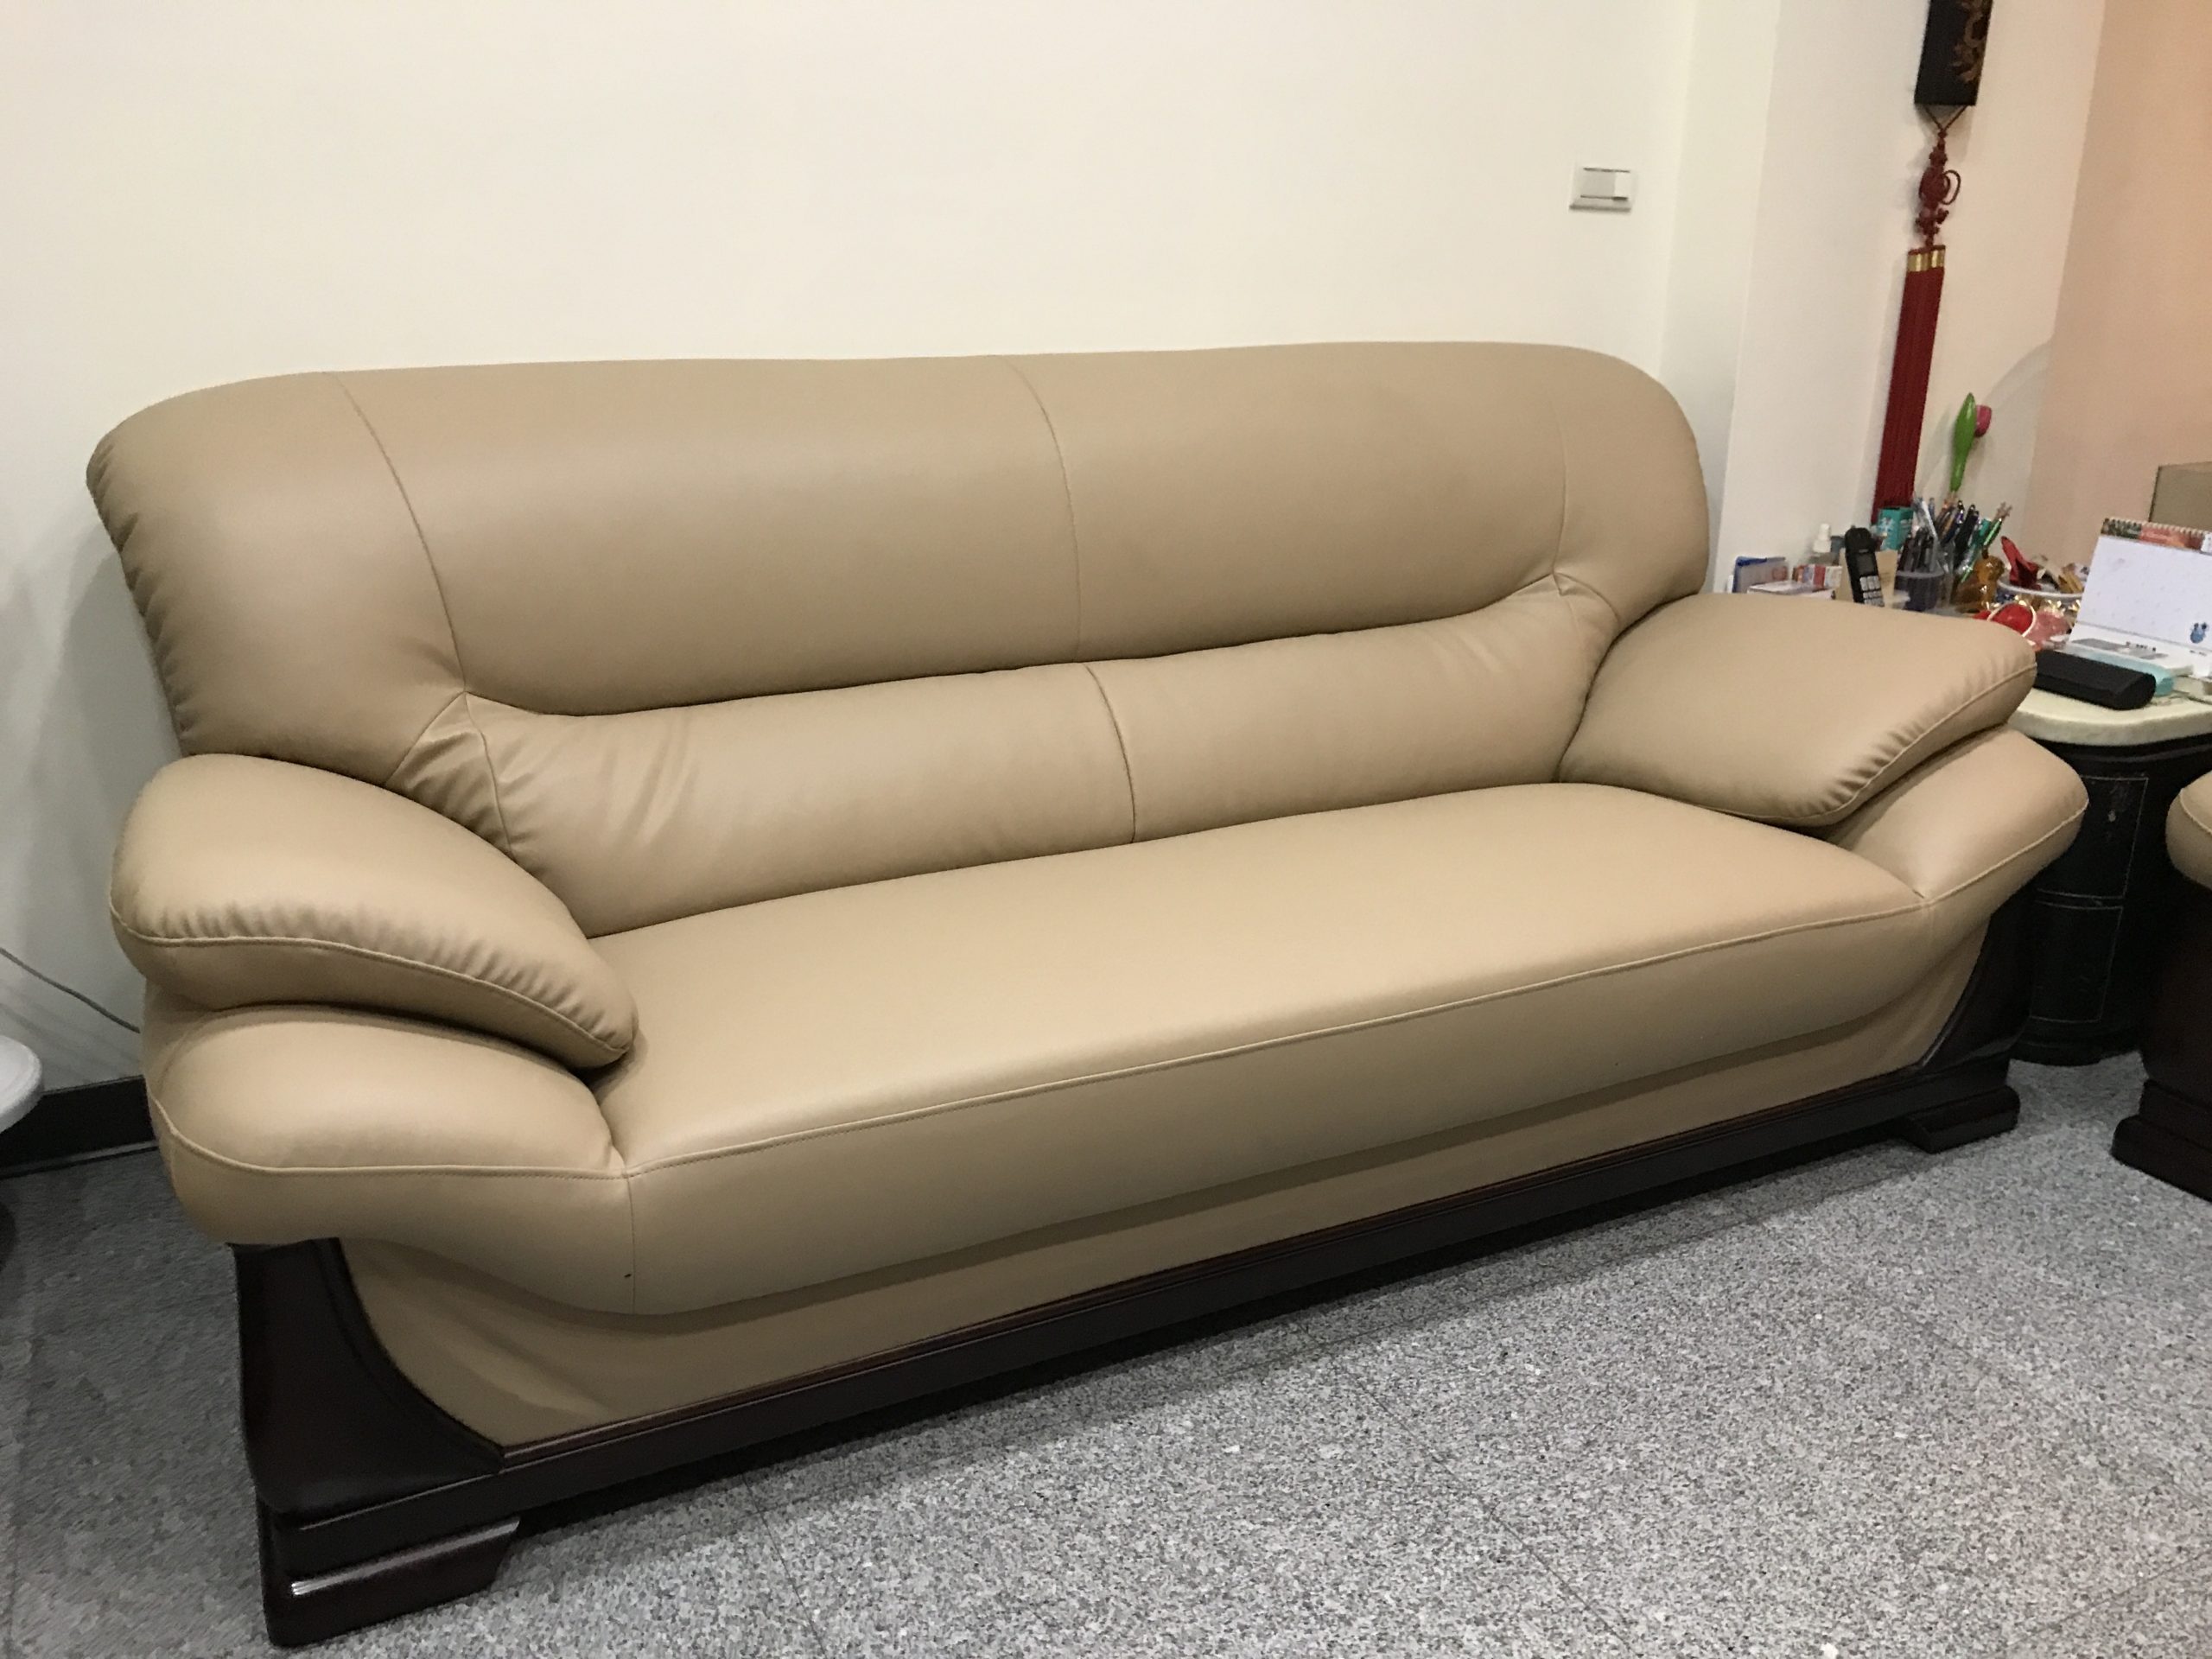 【客戶案例分享】台中市東區1+2+3人座沙發換皮翻新